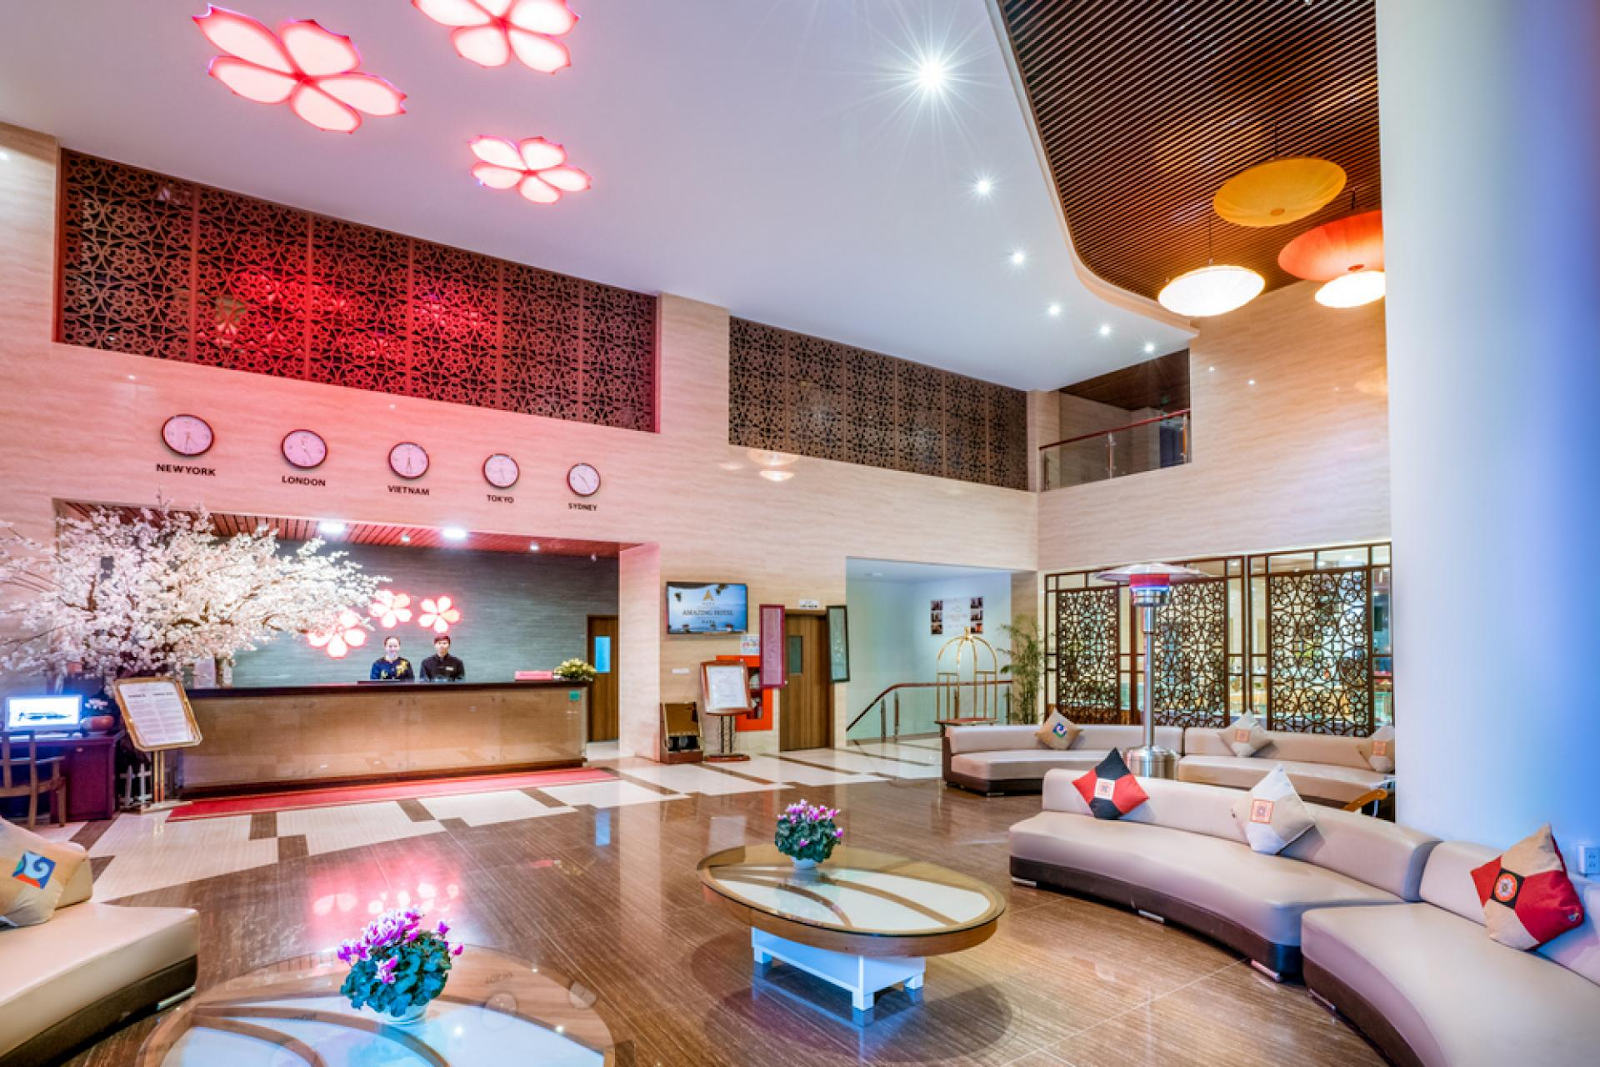 Khách sạn Amazing Sapa sẽ khiến cho du khách thốt lên “Amazing!” (Nguồn: images.viettripnoew.com.vn)